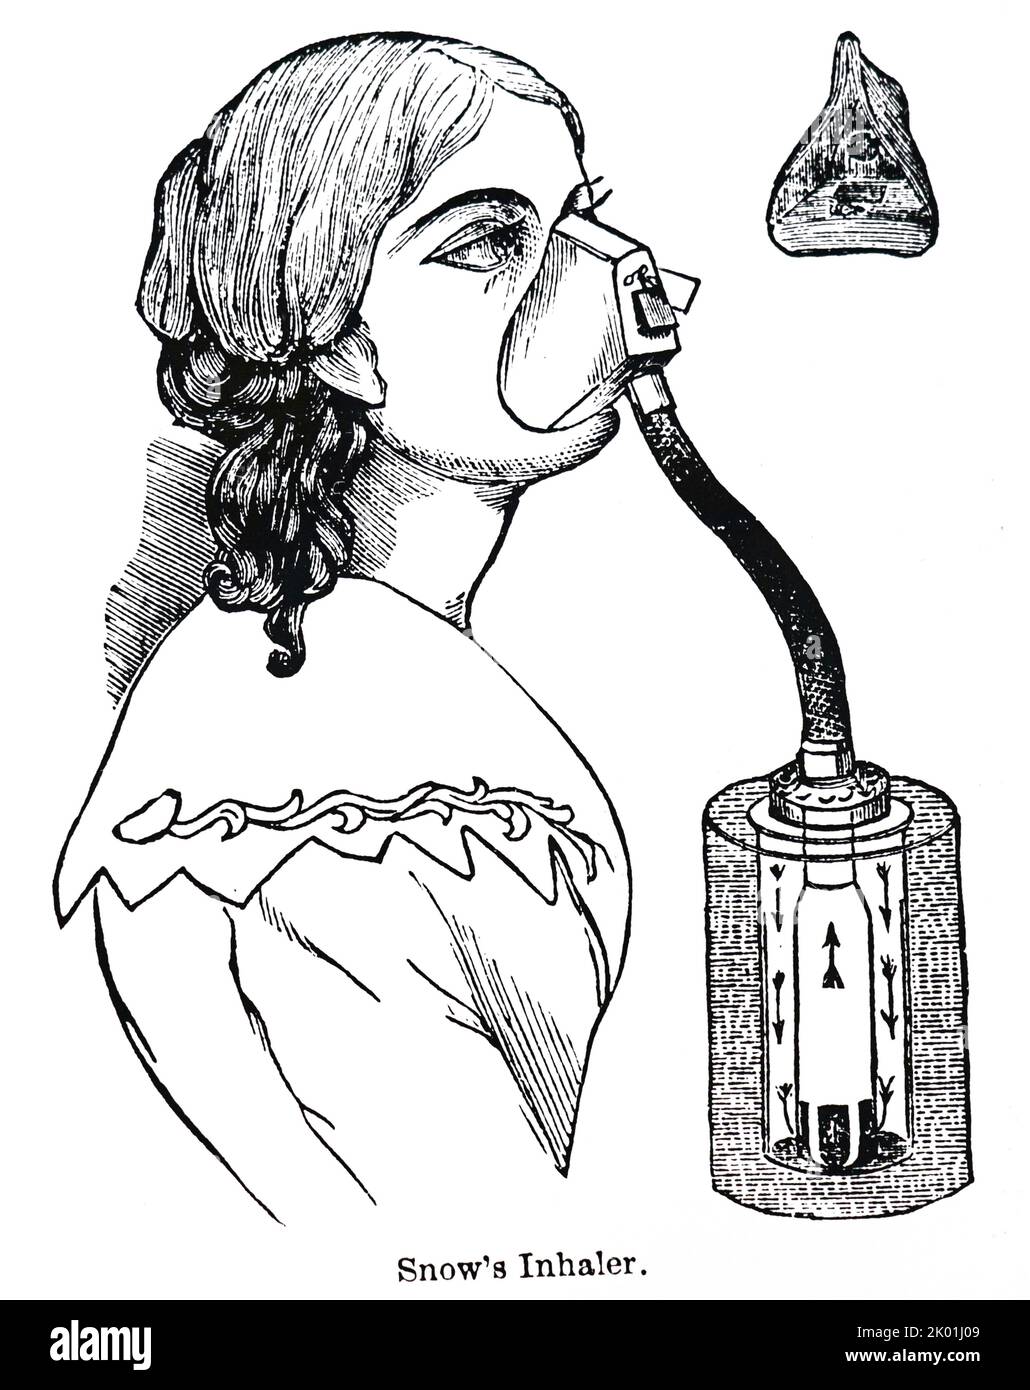 Schnee-Inhalator, der sowohl für Chloroform als auch für Äther verwendet wurde. Von Henry M Lyman Artificial Anesthesia and Anaesthestics, London, 1883. Stockfoto